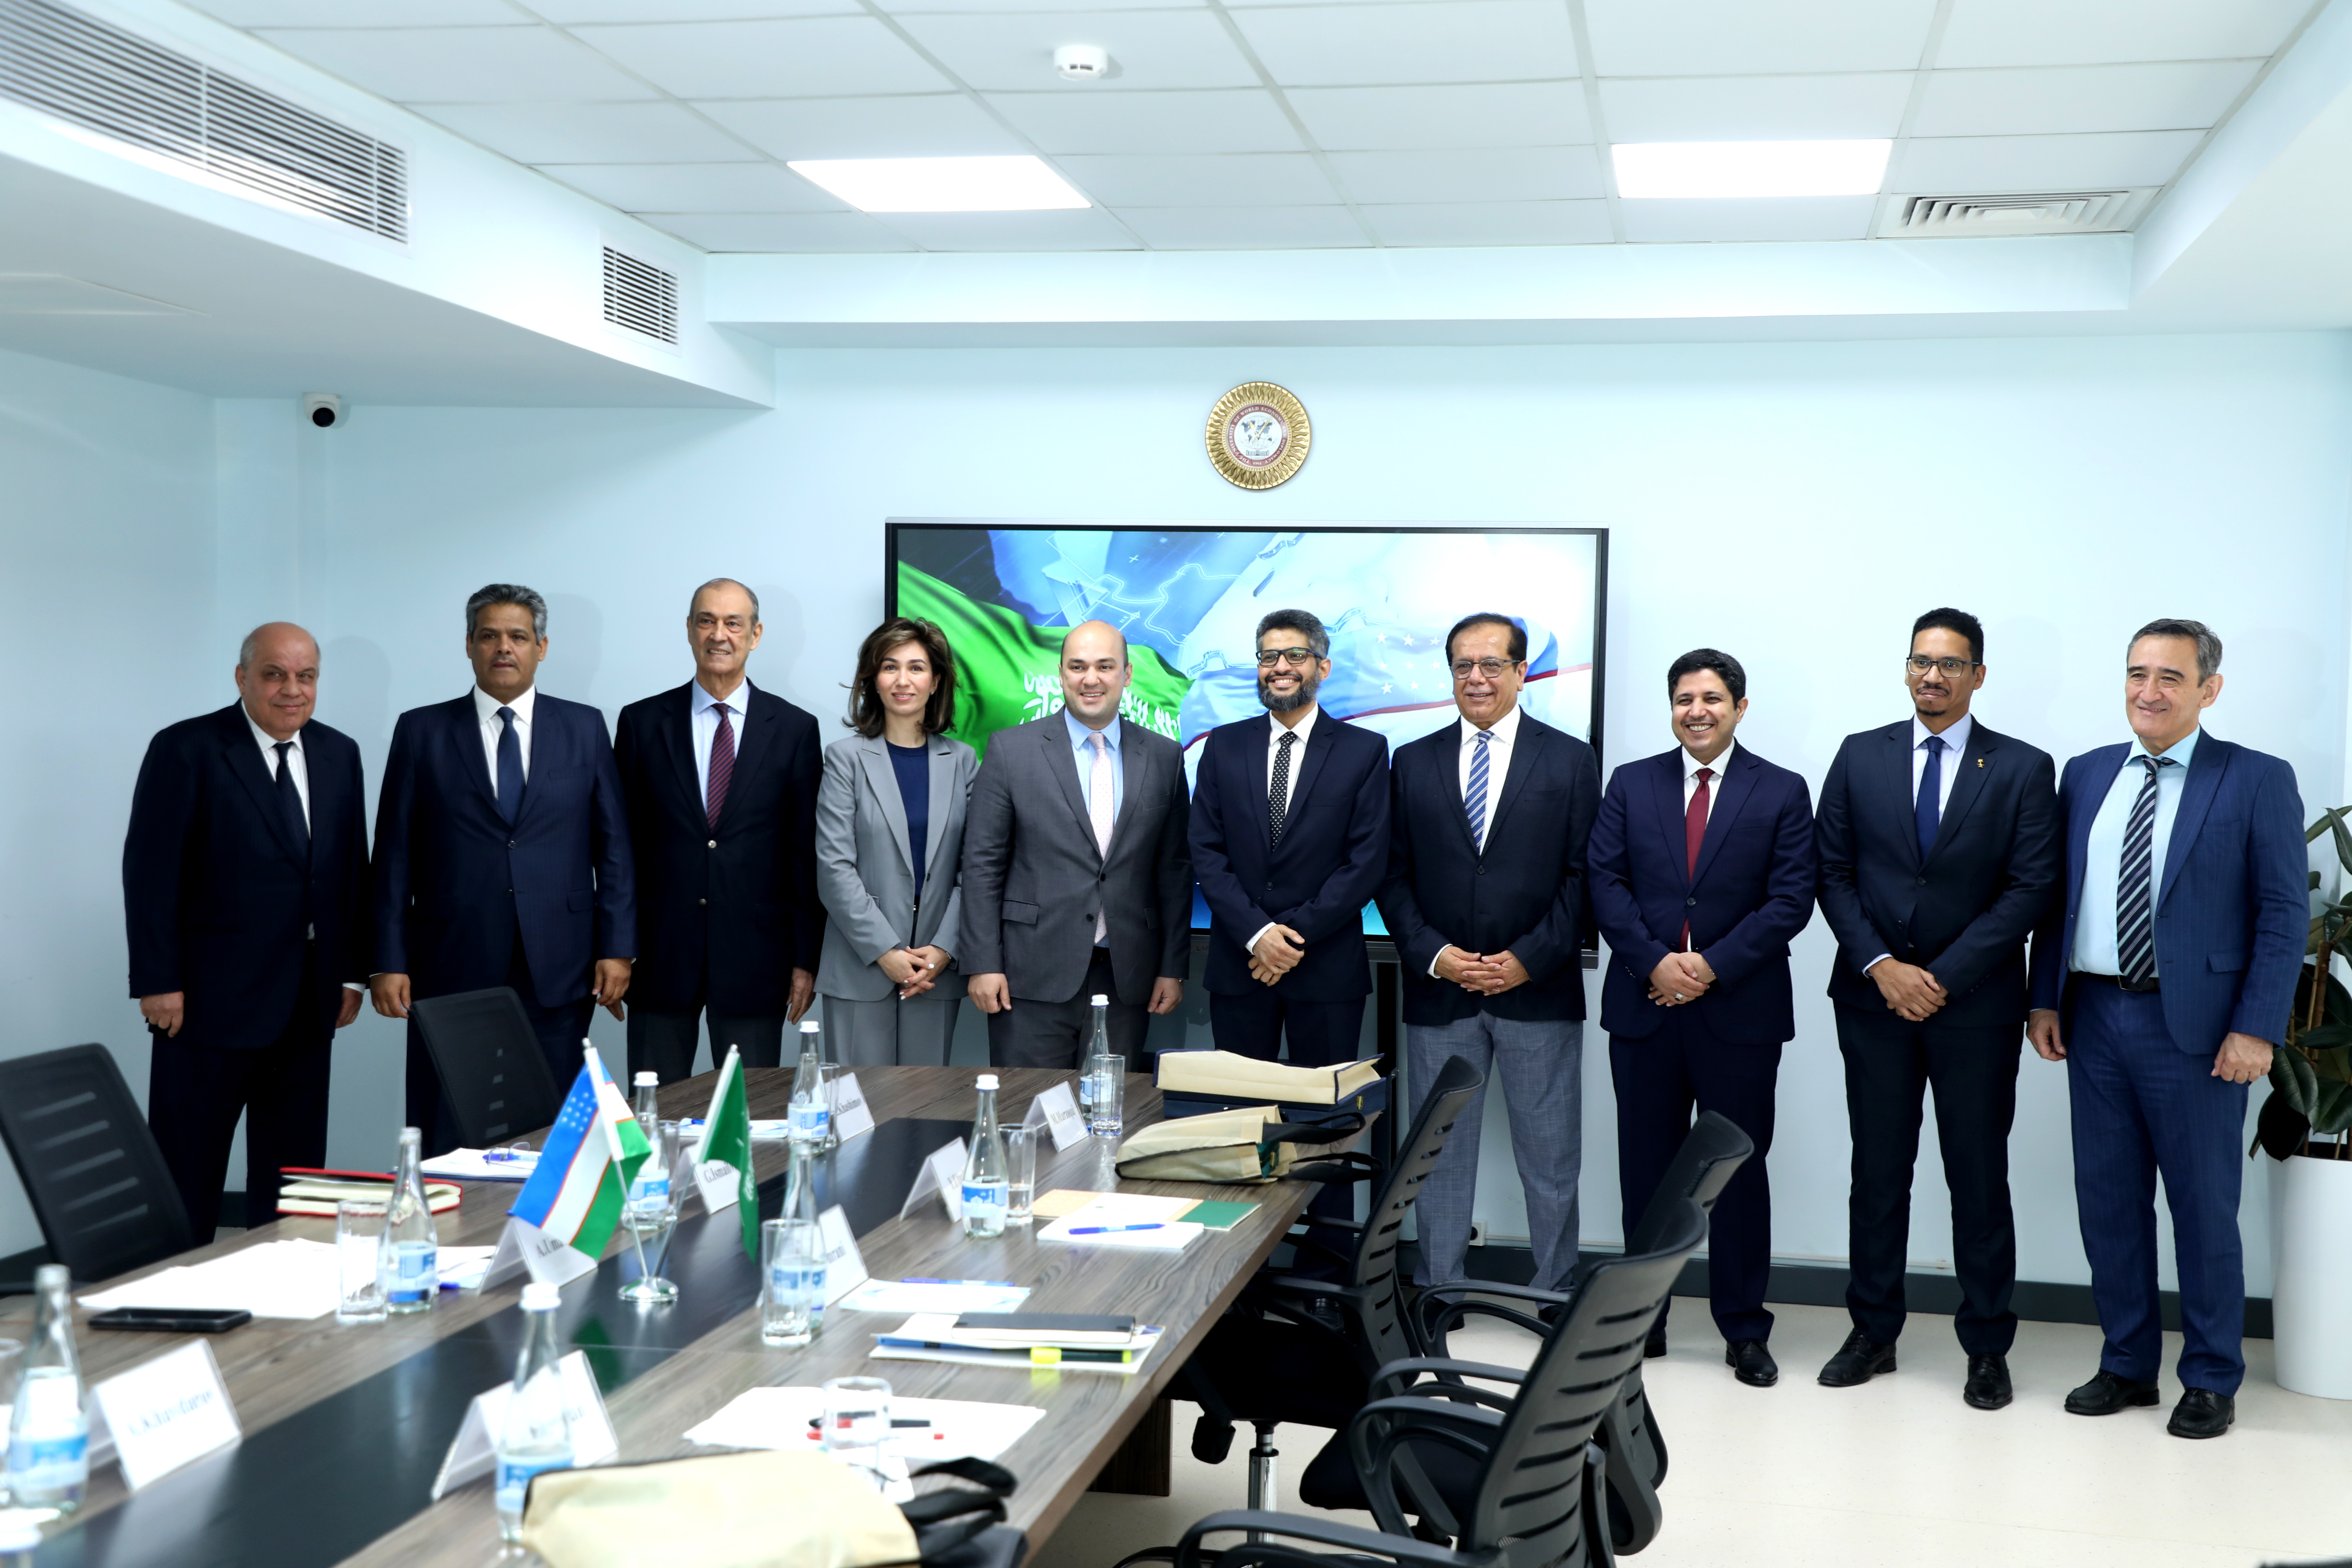 Дипломатическая академия при УМЭД и Институт дипломатических исследований имени принца Сауда Аль-Фейсала укрепляют сотрудничество